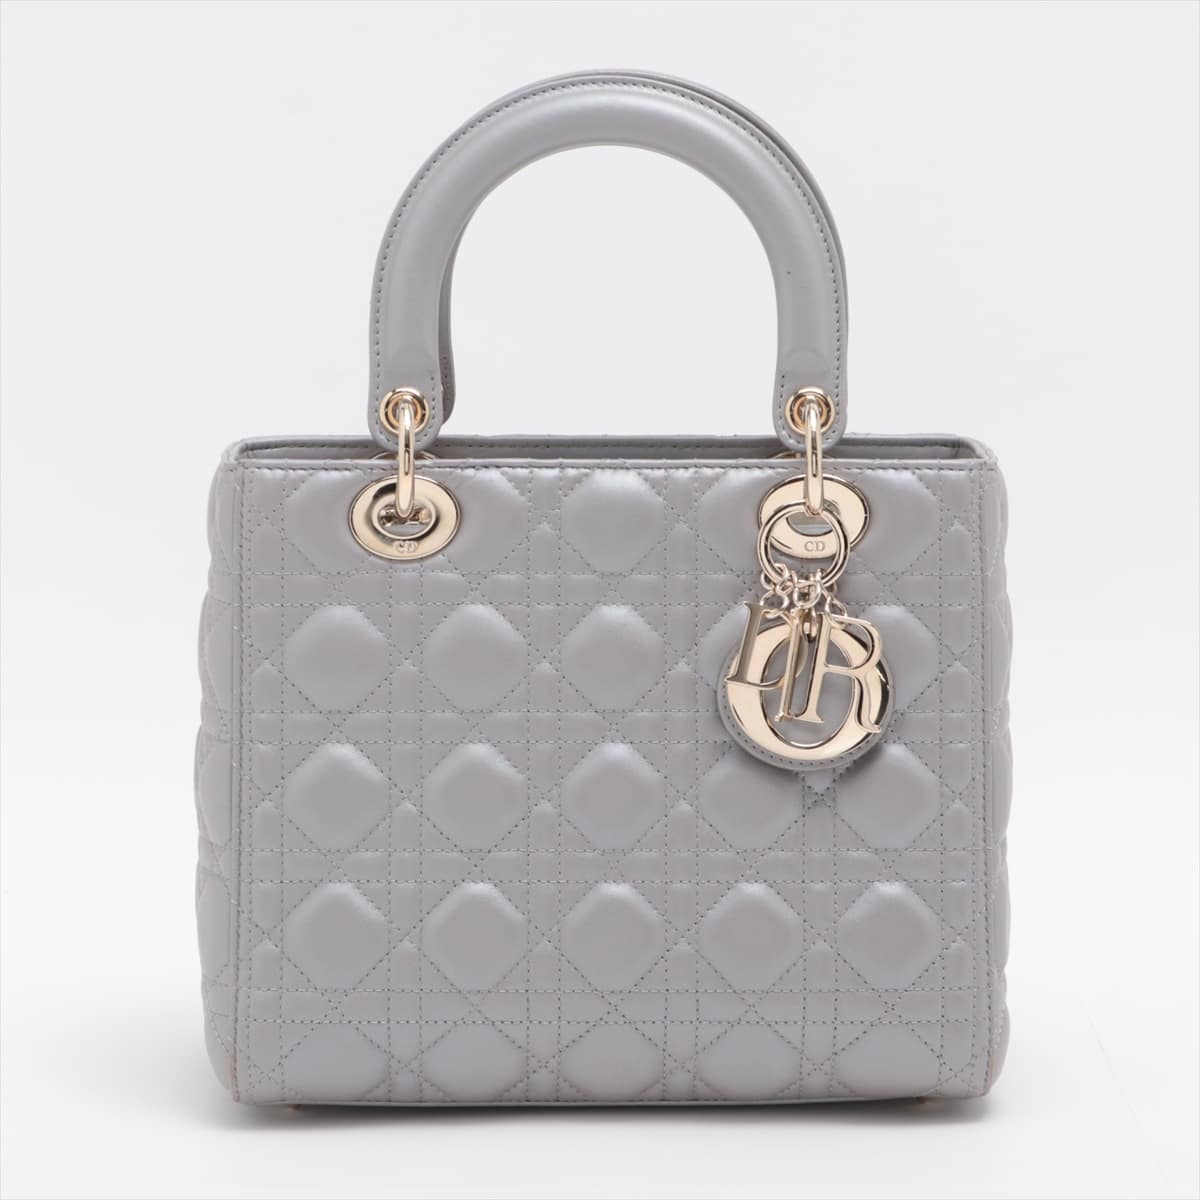 Christian Dior Lady Dior Cannage Leather 2way handbag Grey